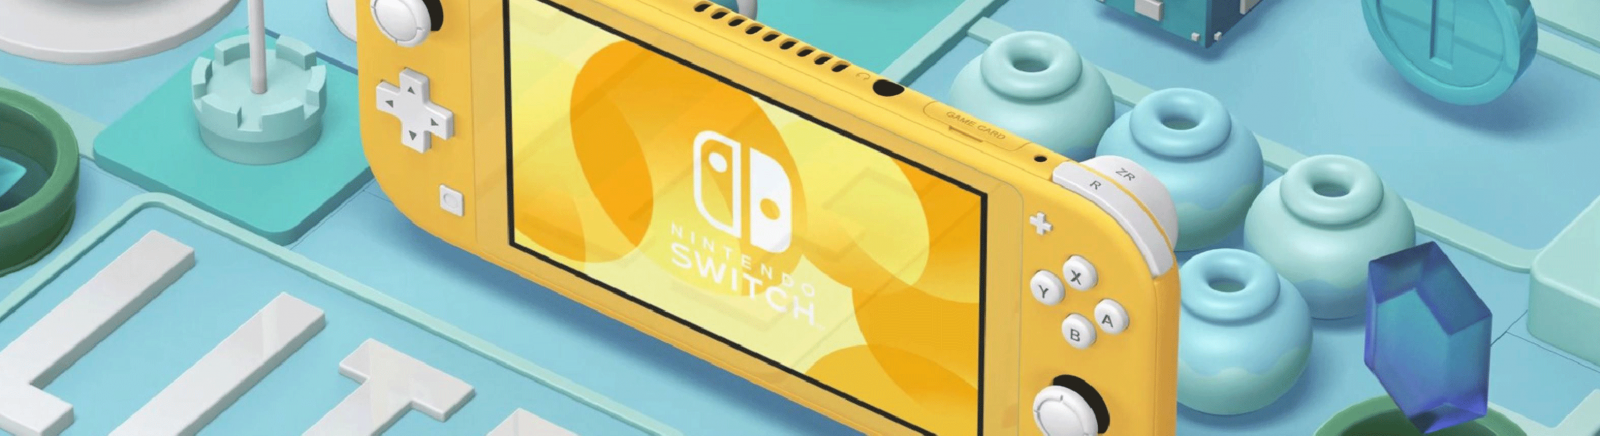 Làm Sao Để Mua Nintendo Switch Lite Giá Rẻ